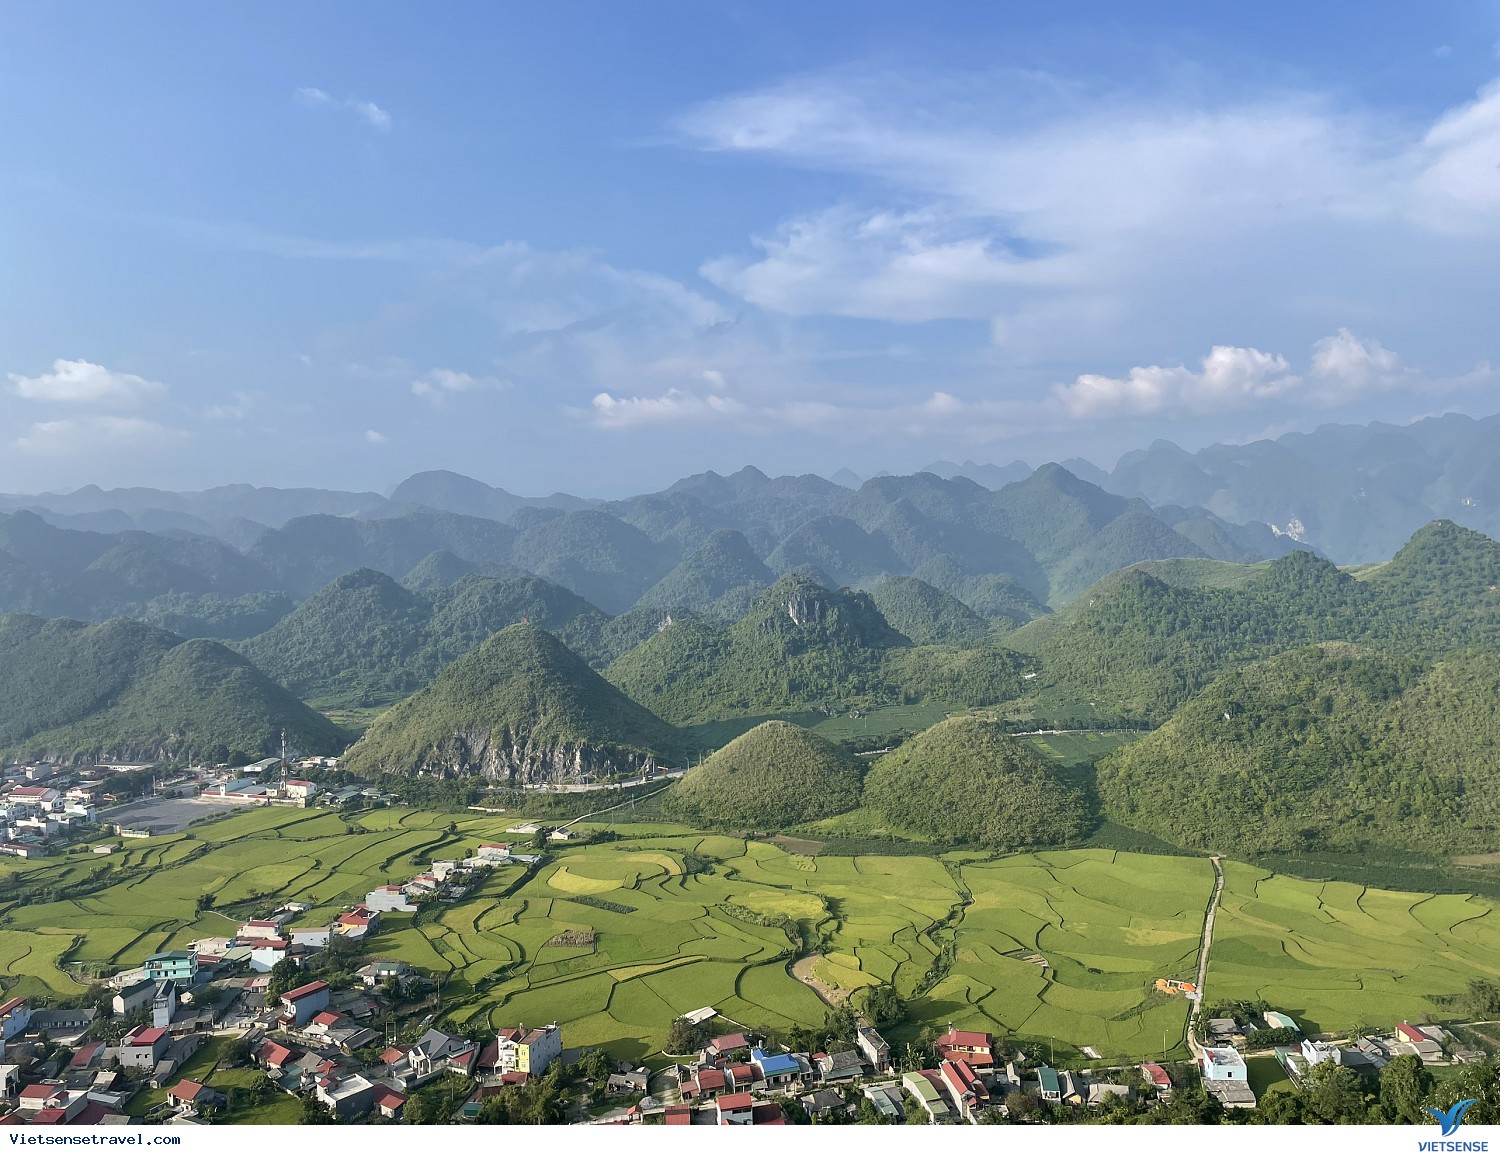 Tạo hoá đối với Hà Giang là vô cùng đặc biệt. Với những ngọn đồi đồi núi cao, những dòng sông uốn khúc cảnh quan ở đây như được vẽ hoàn hảo. Bạn sẽ được thấy vẻ đẹp hoang sơ, đặc trưng chỉ có ở vùng cao nguyên phía Bắc nước ta.